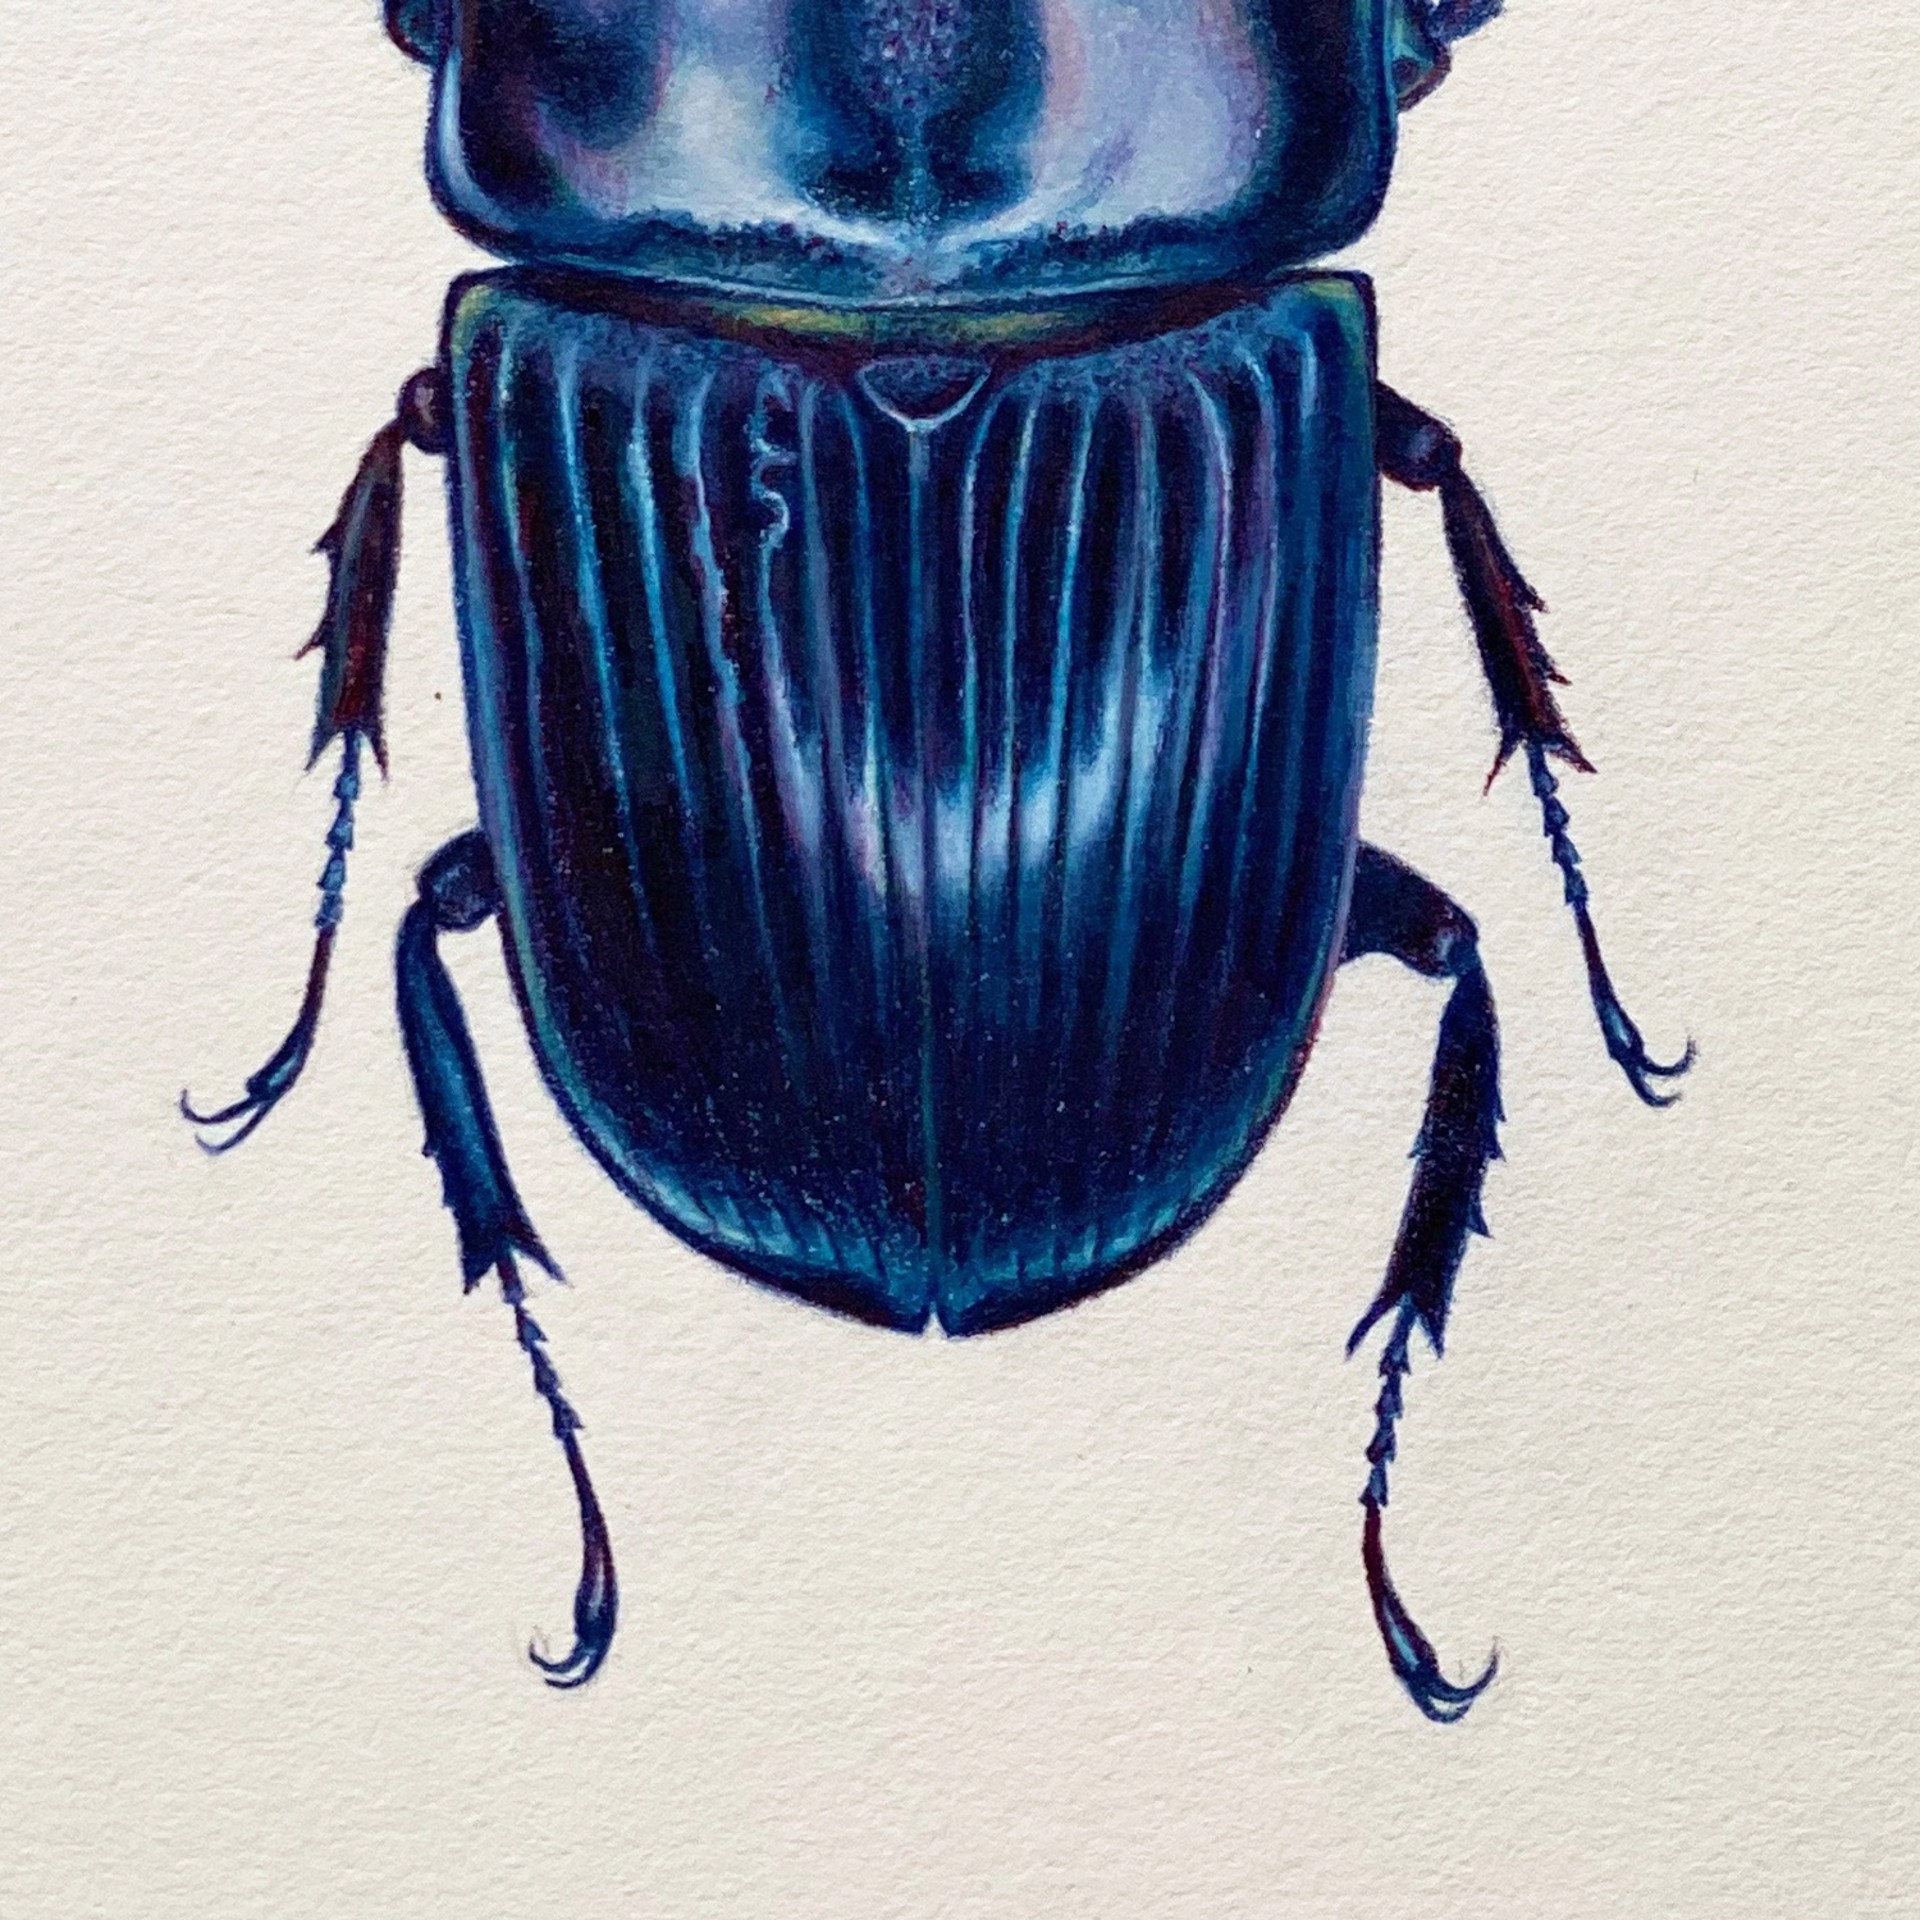 Coleoptera Chroma #22 by Hannah Hanlon